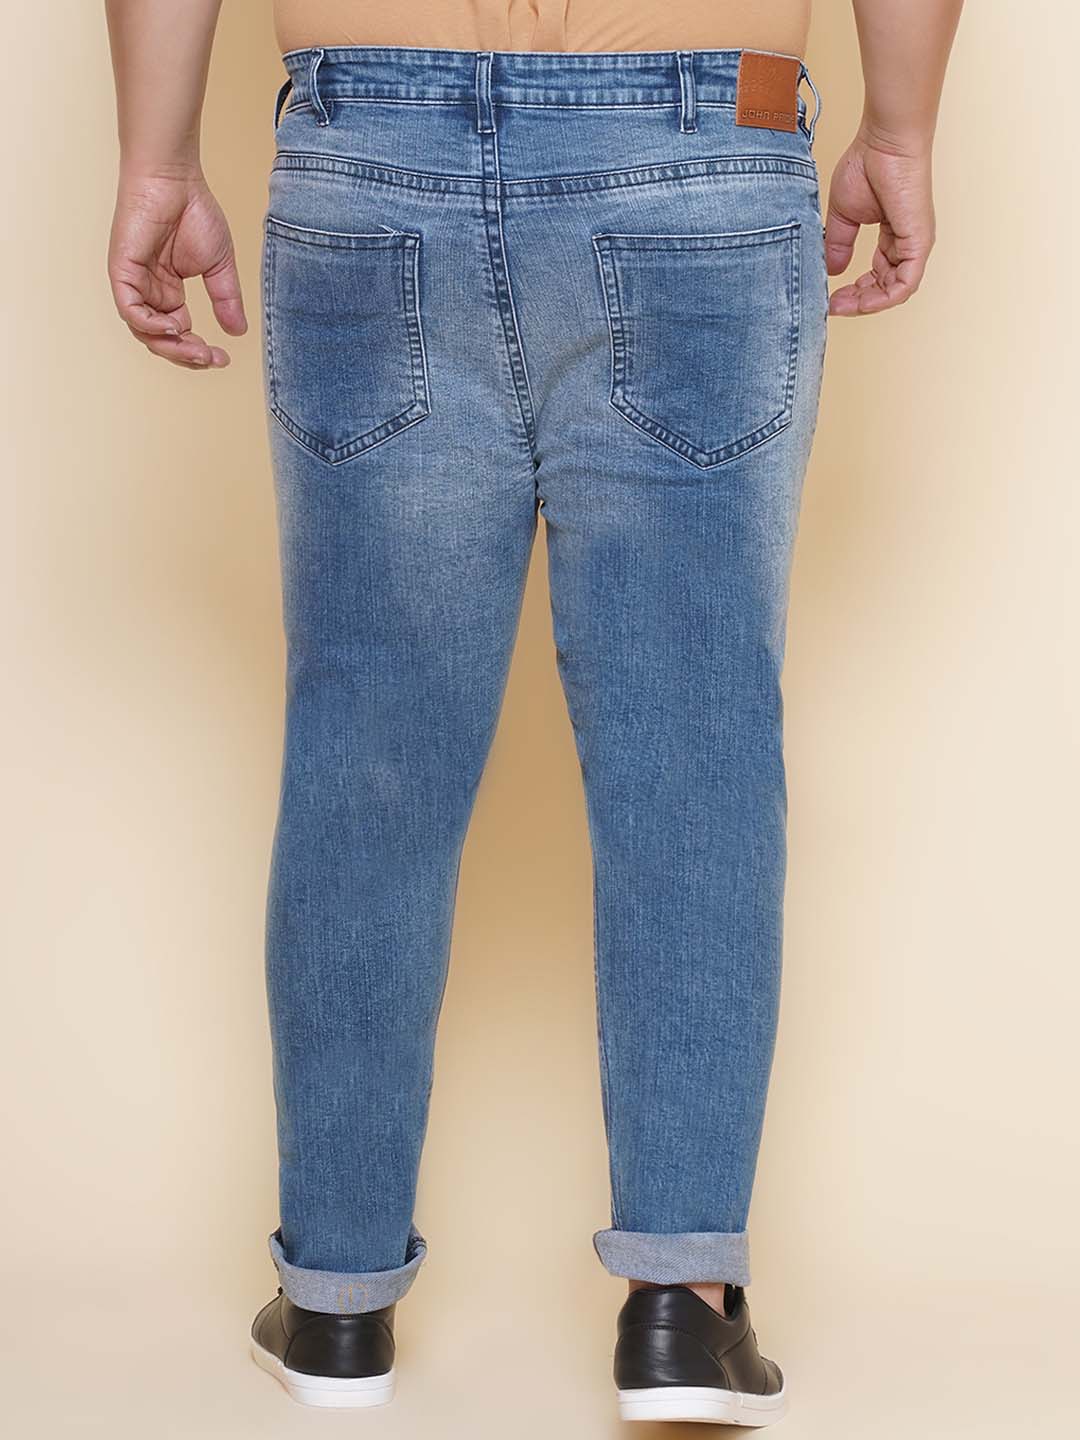 bottomwear/jeans/JPJ27106/jpj27106-5.jpg